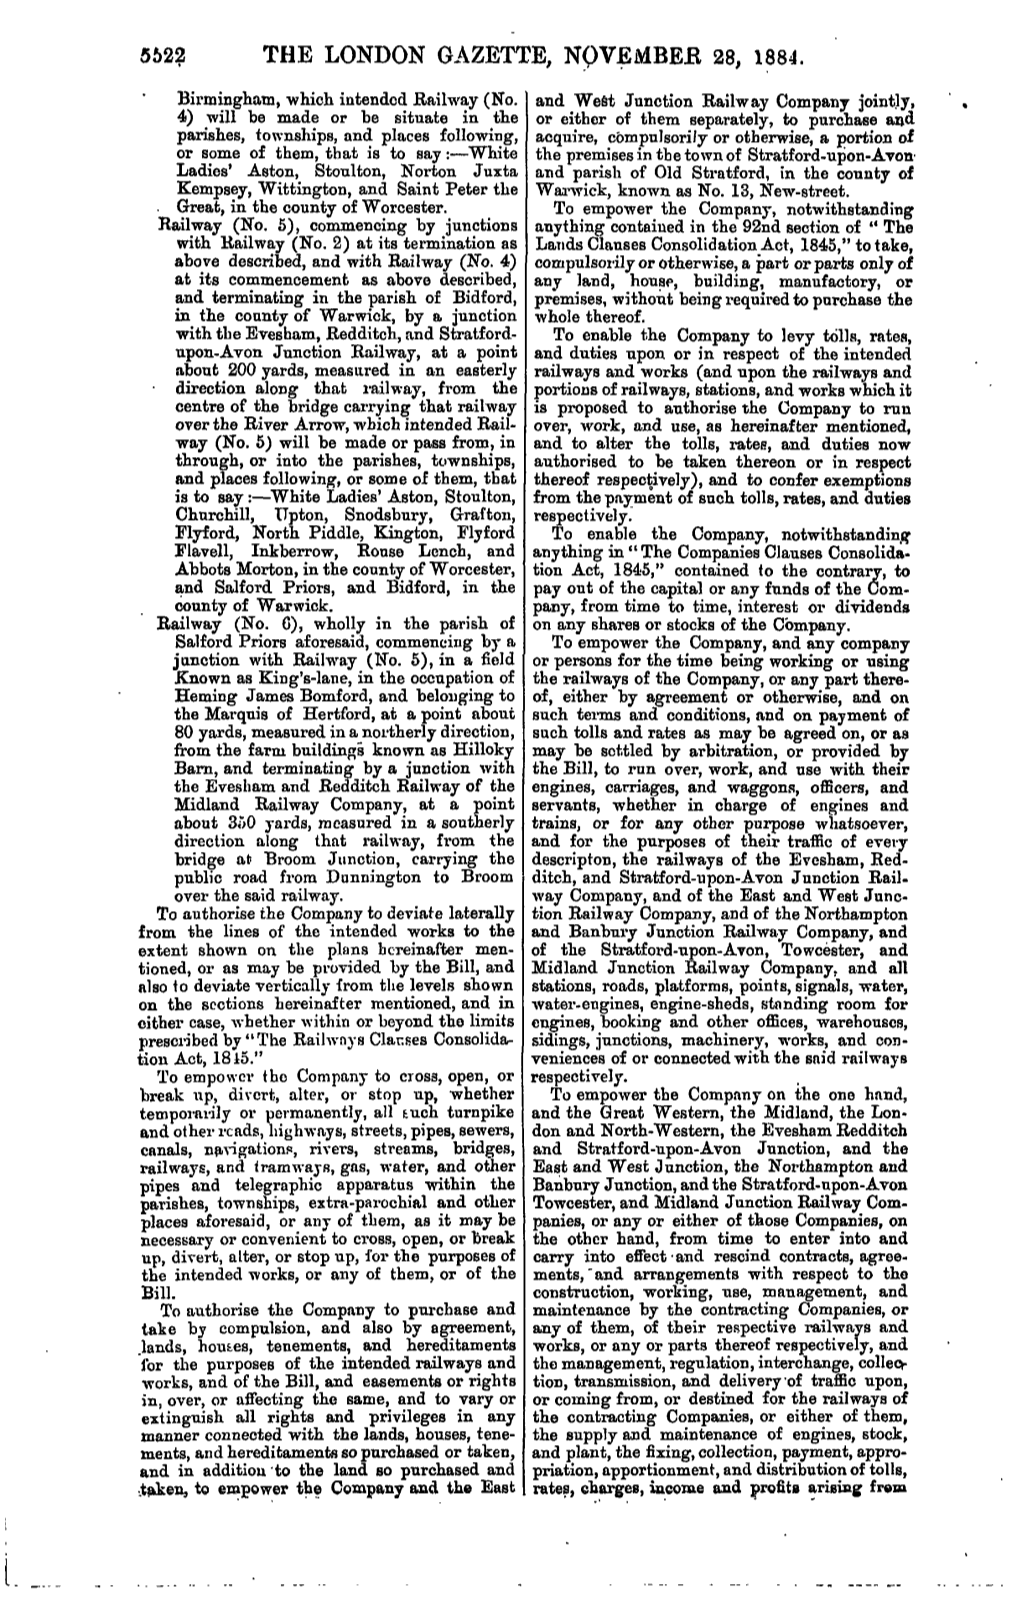 The London Gazette, Novembeb 28, 1884